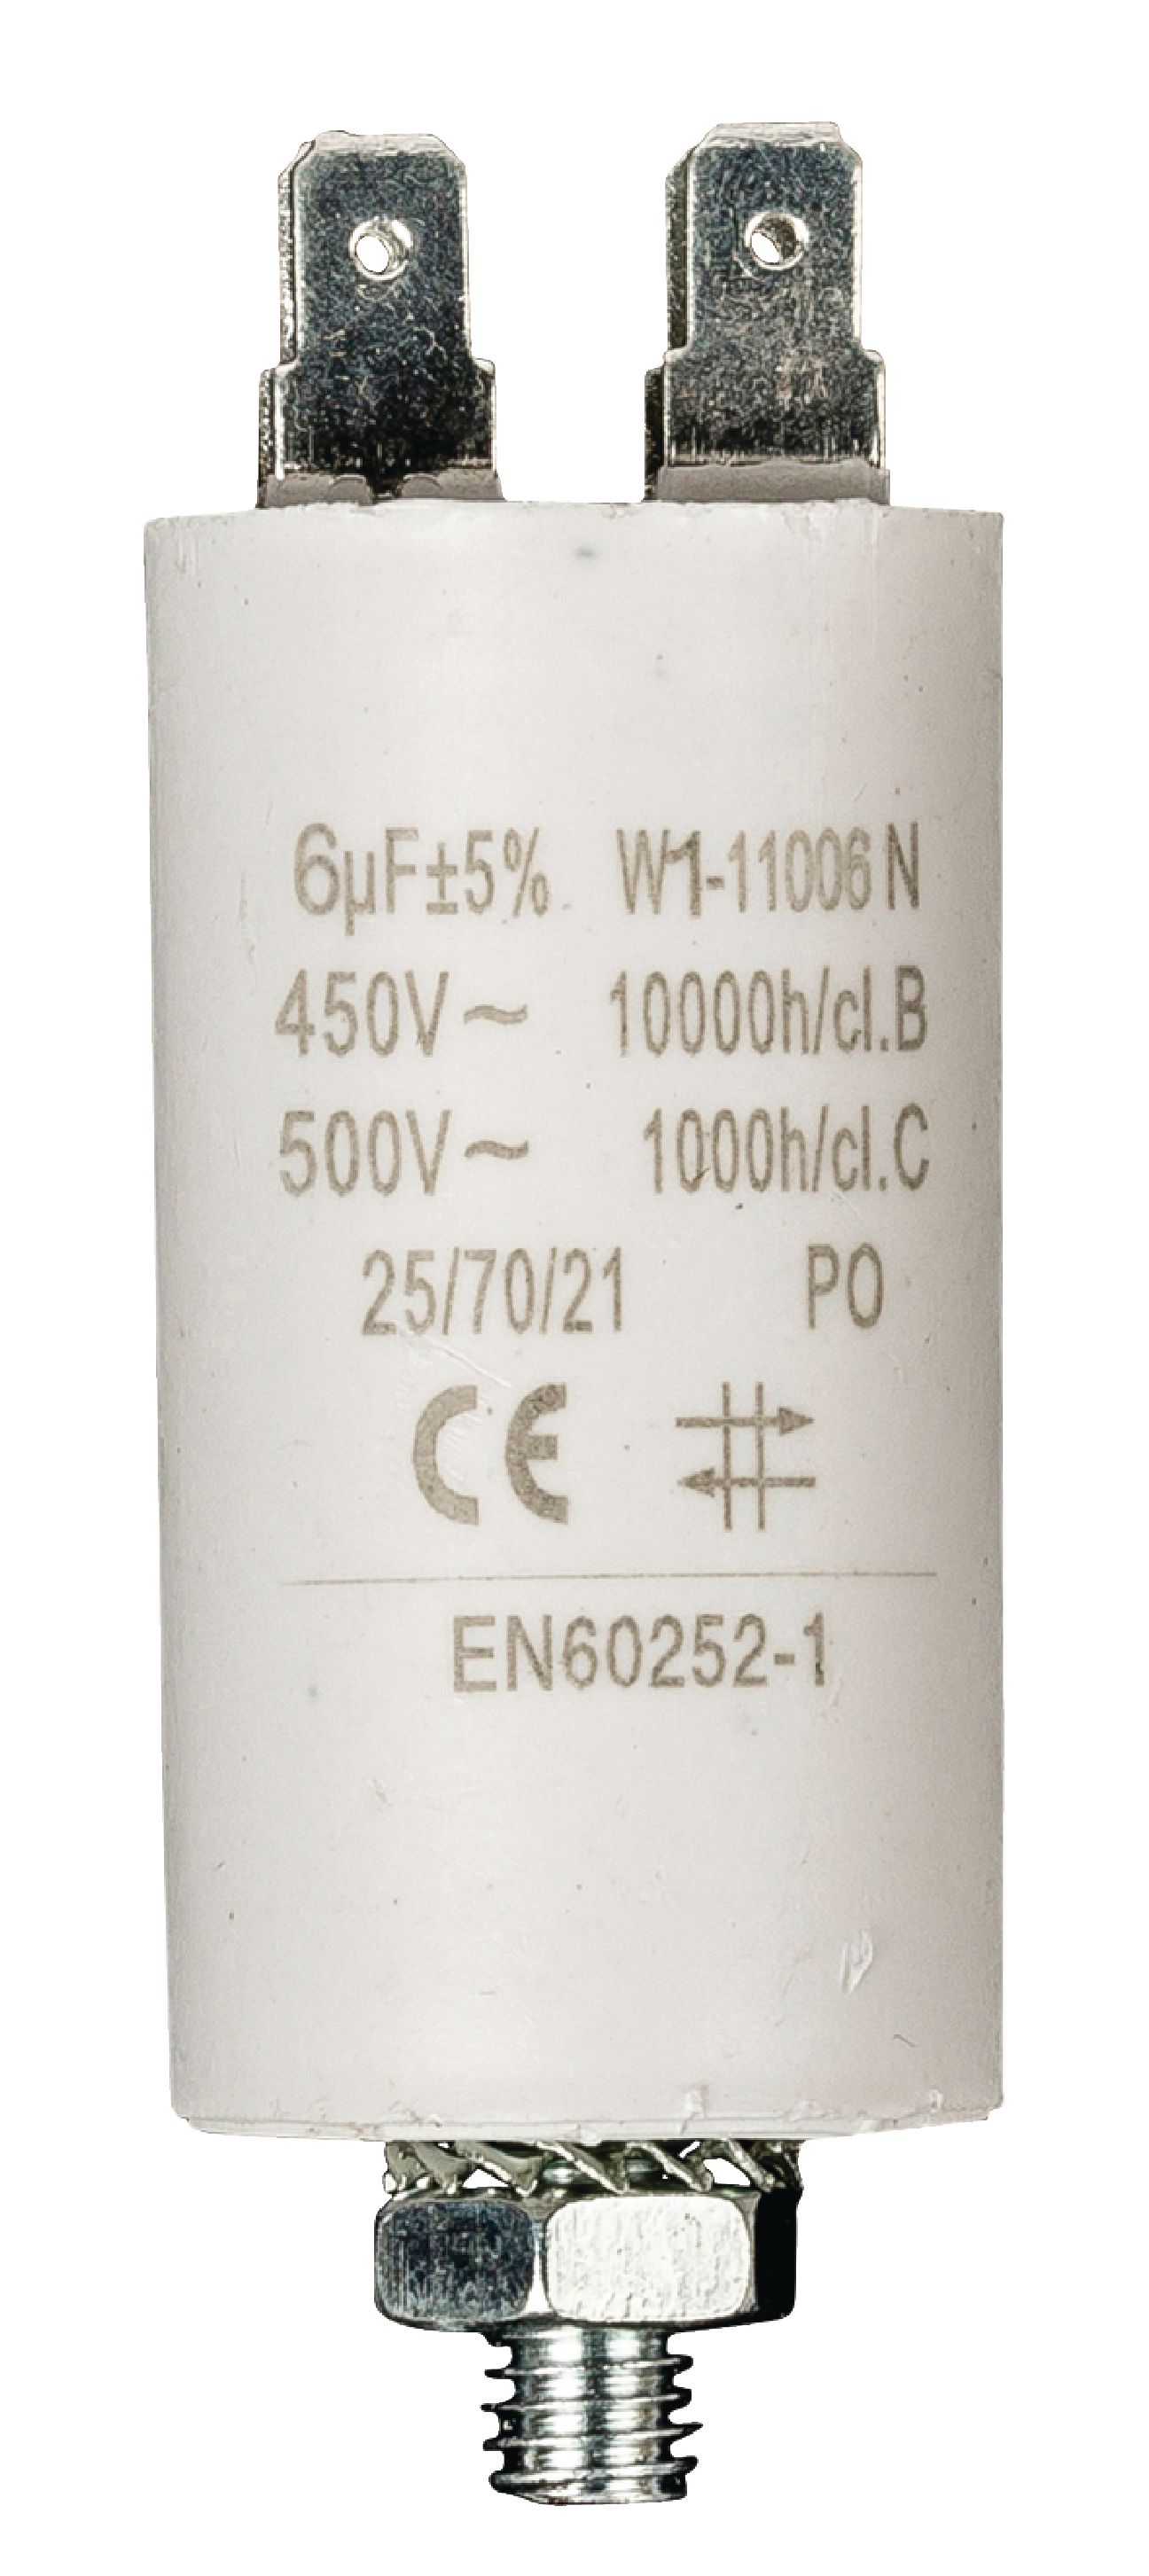 Kondenzátor rozběhový 6uf / 450 V s fastony (W1-11006N)